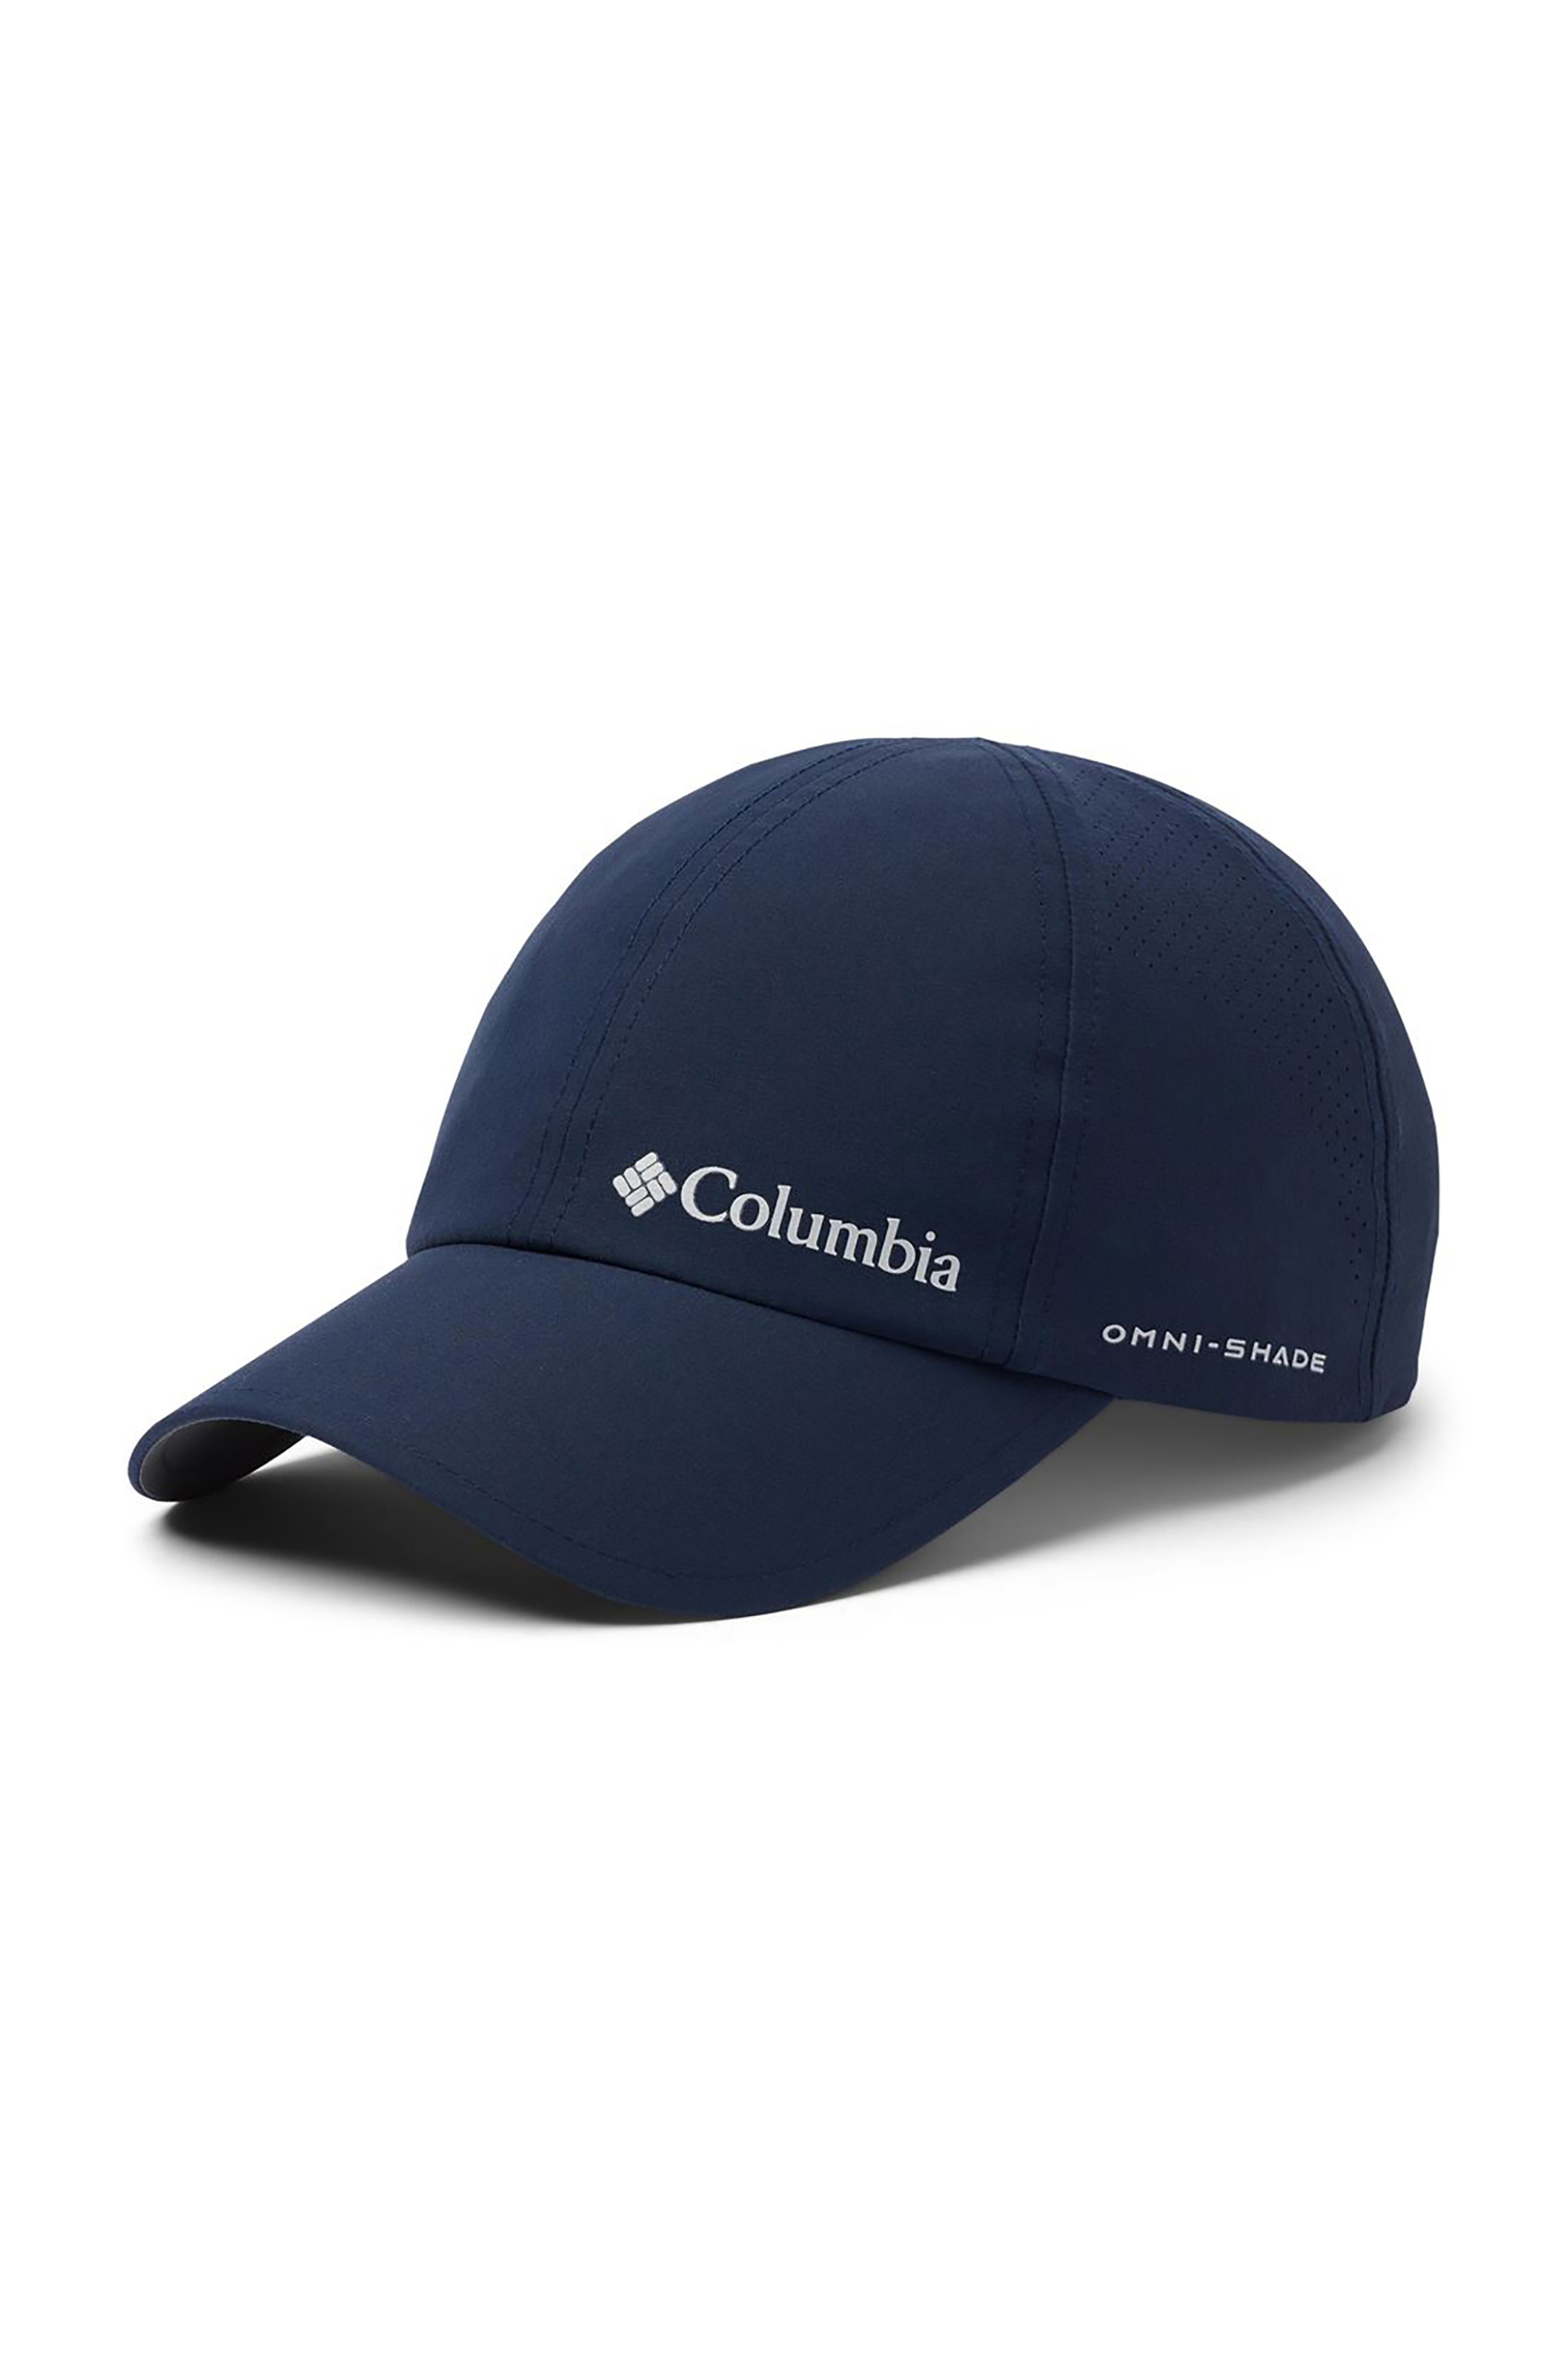 Ανδρική Μόδα > Ανδρικά Αξεσουάρ > Ανδρικά Καπέλα & Σκούφοι Columbia unisex καπέλο jockey με logo print ''Silver Ridge™ III'' - 1840071464TEM Μπλε Σκούρο